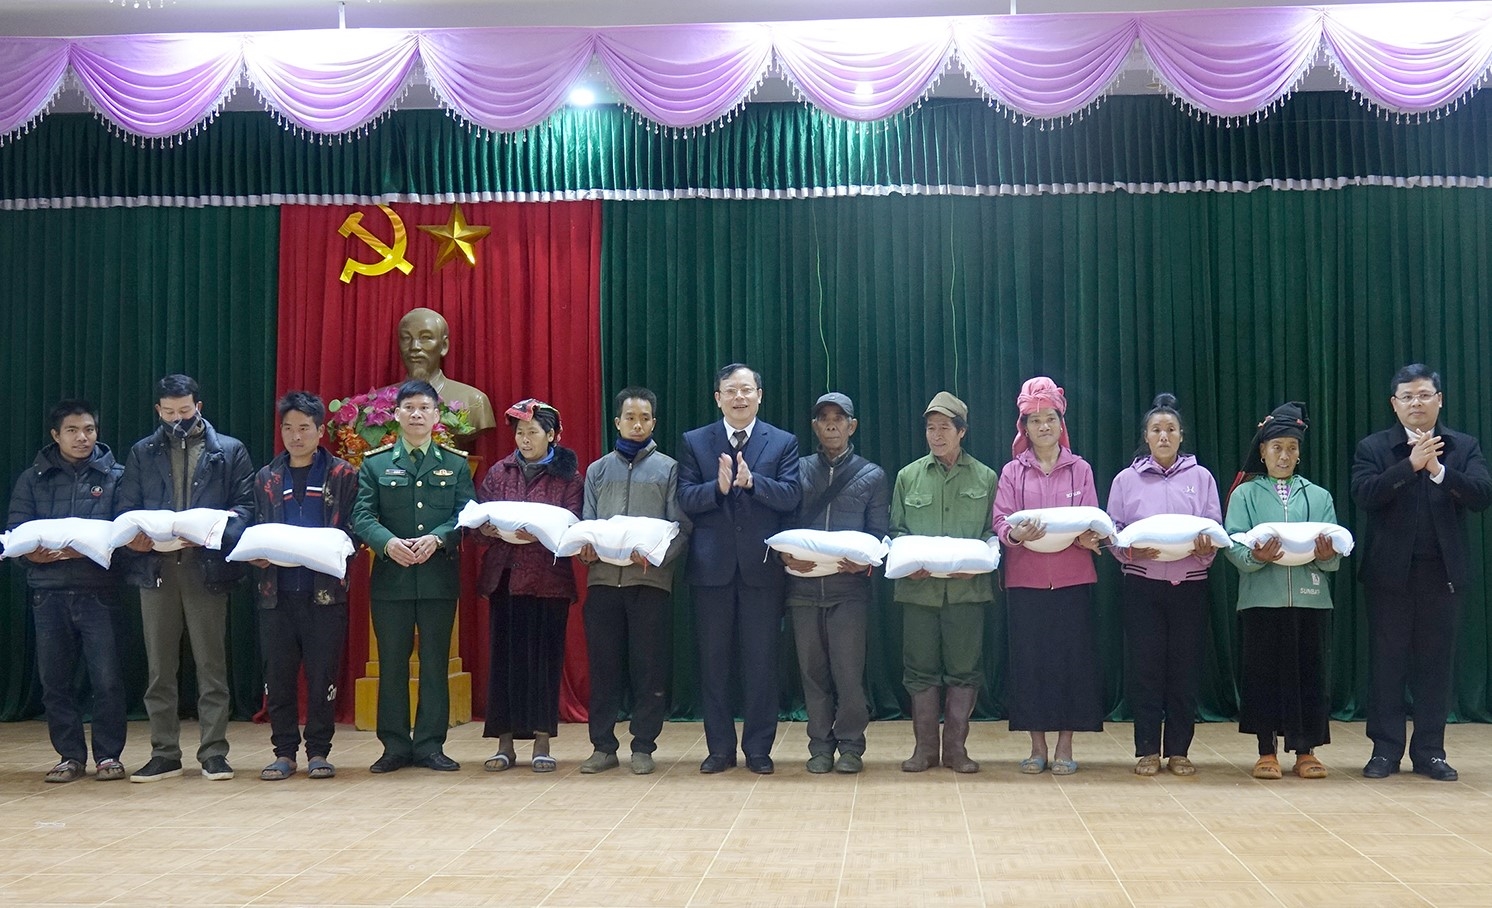 Ông Nguyễn Thái Hưng, Chủ tịch Hội đồng Nhân dân tỉnh Sơn La chuyển trao 1 tấn gạo cho các hộ nghèo xã Phiêng Pằn.